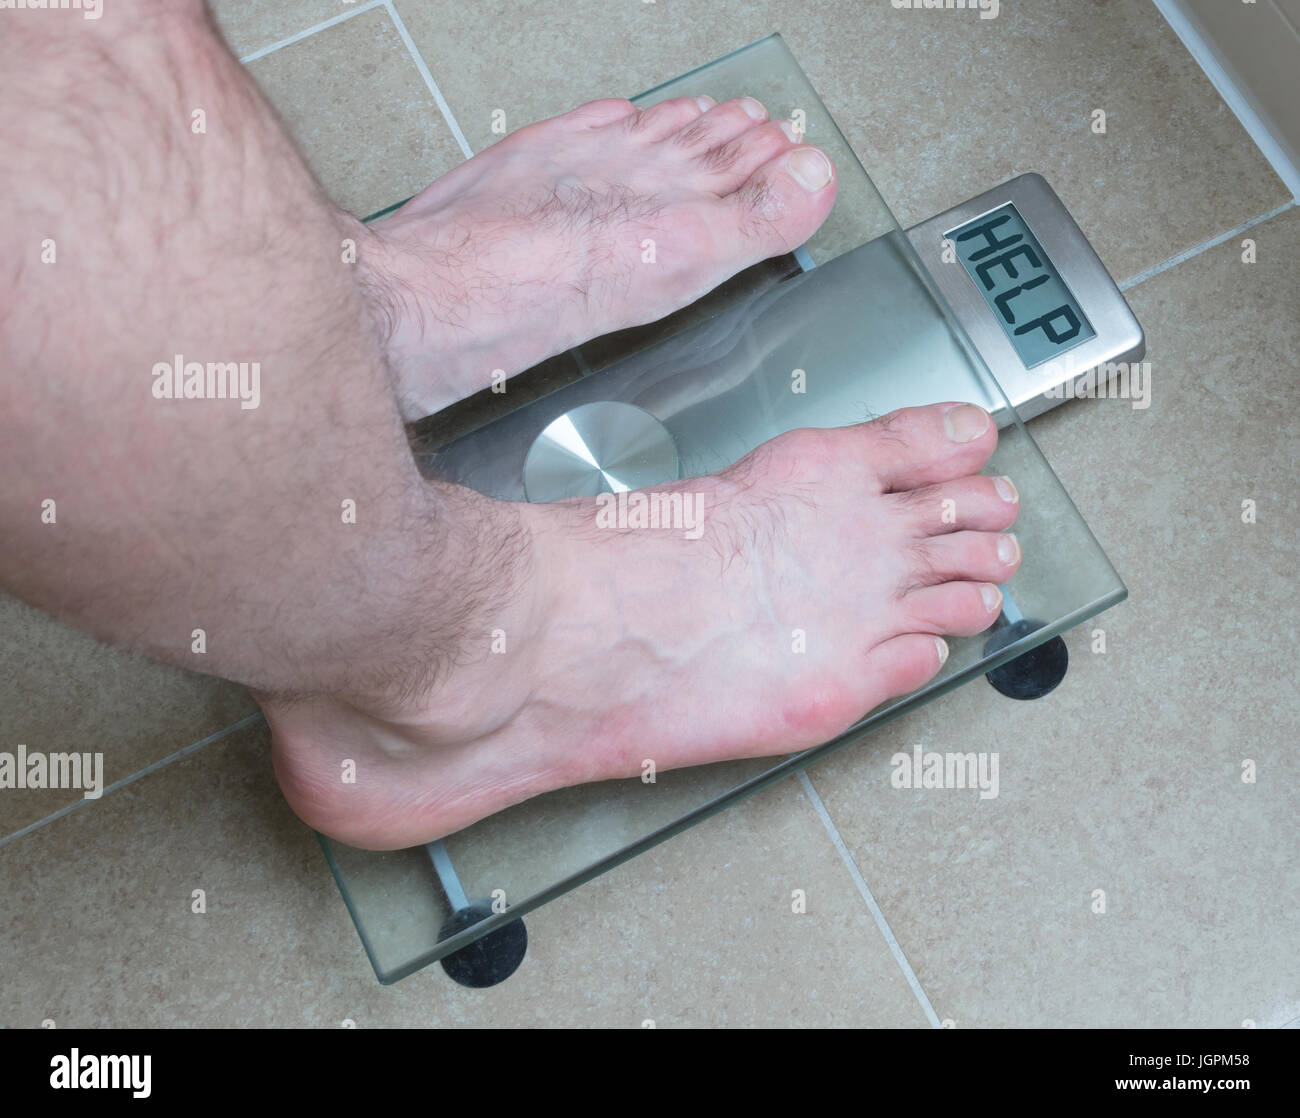 Вес ноги мужчины. Мужские ноги на весах. Мужчина на весах. 120 Кг на весах. Весы ножки на весах.